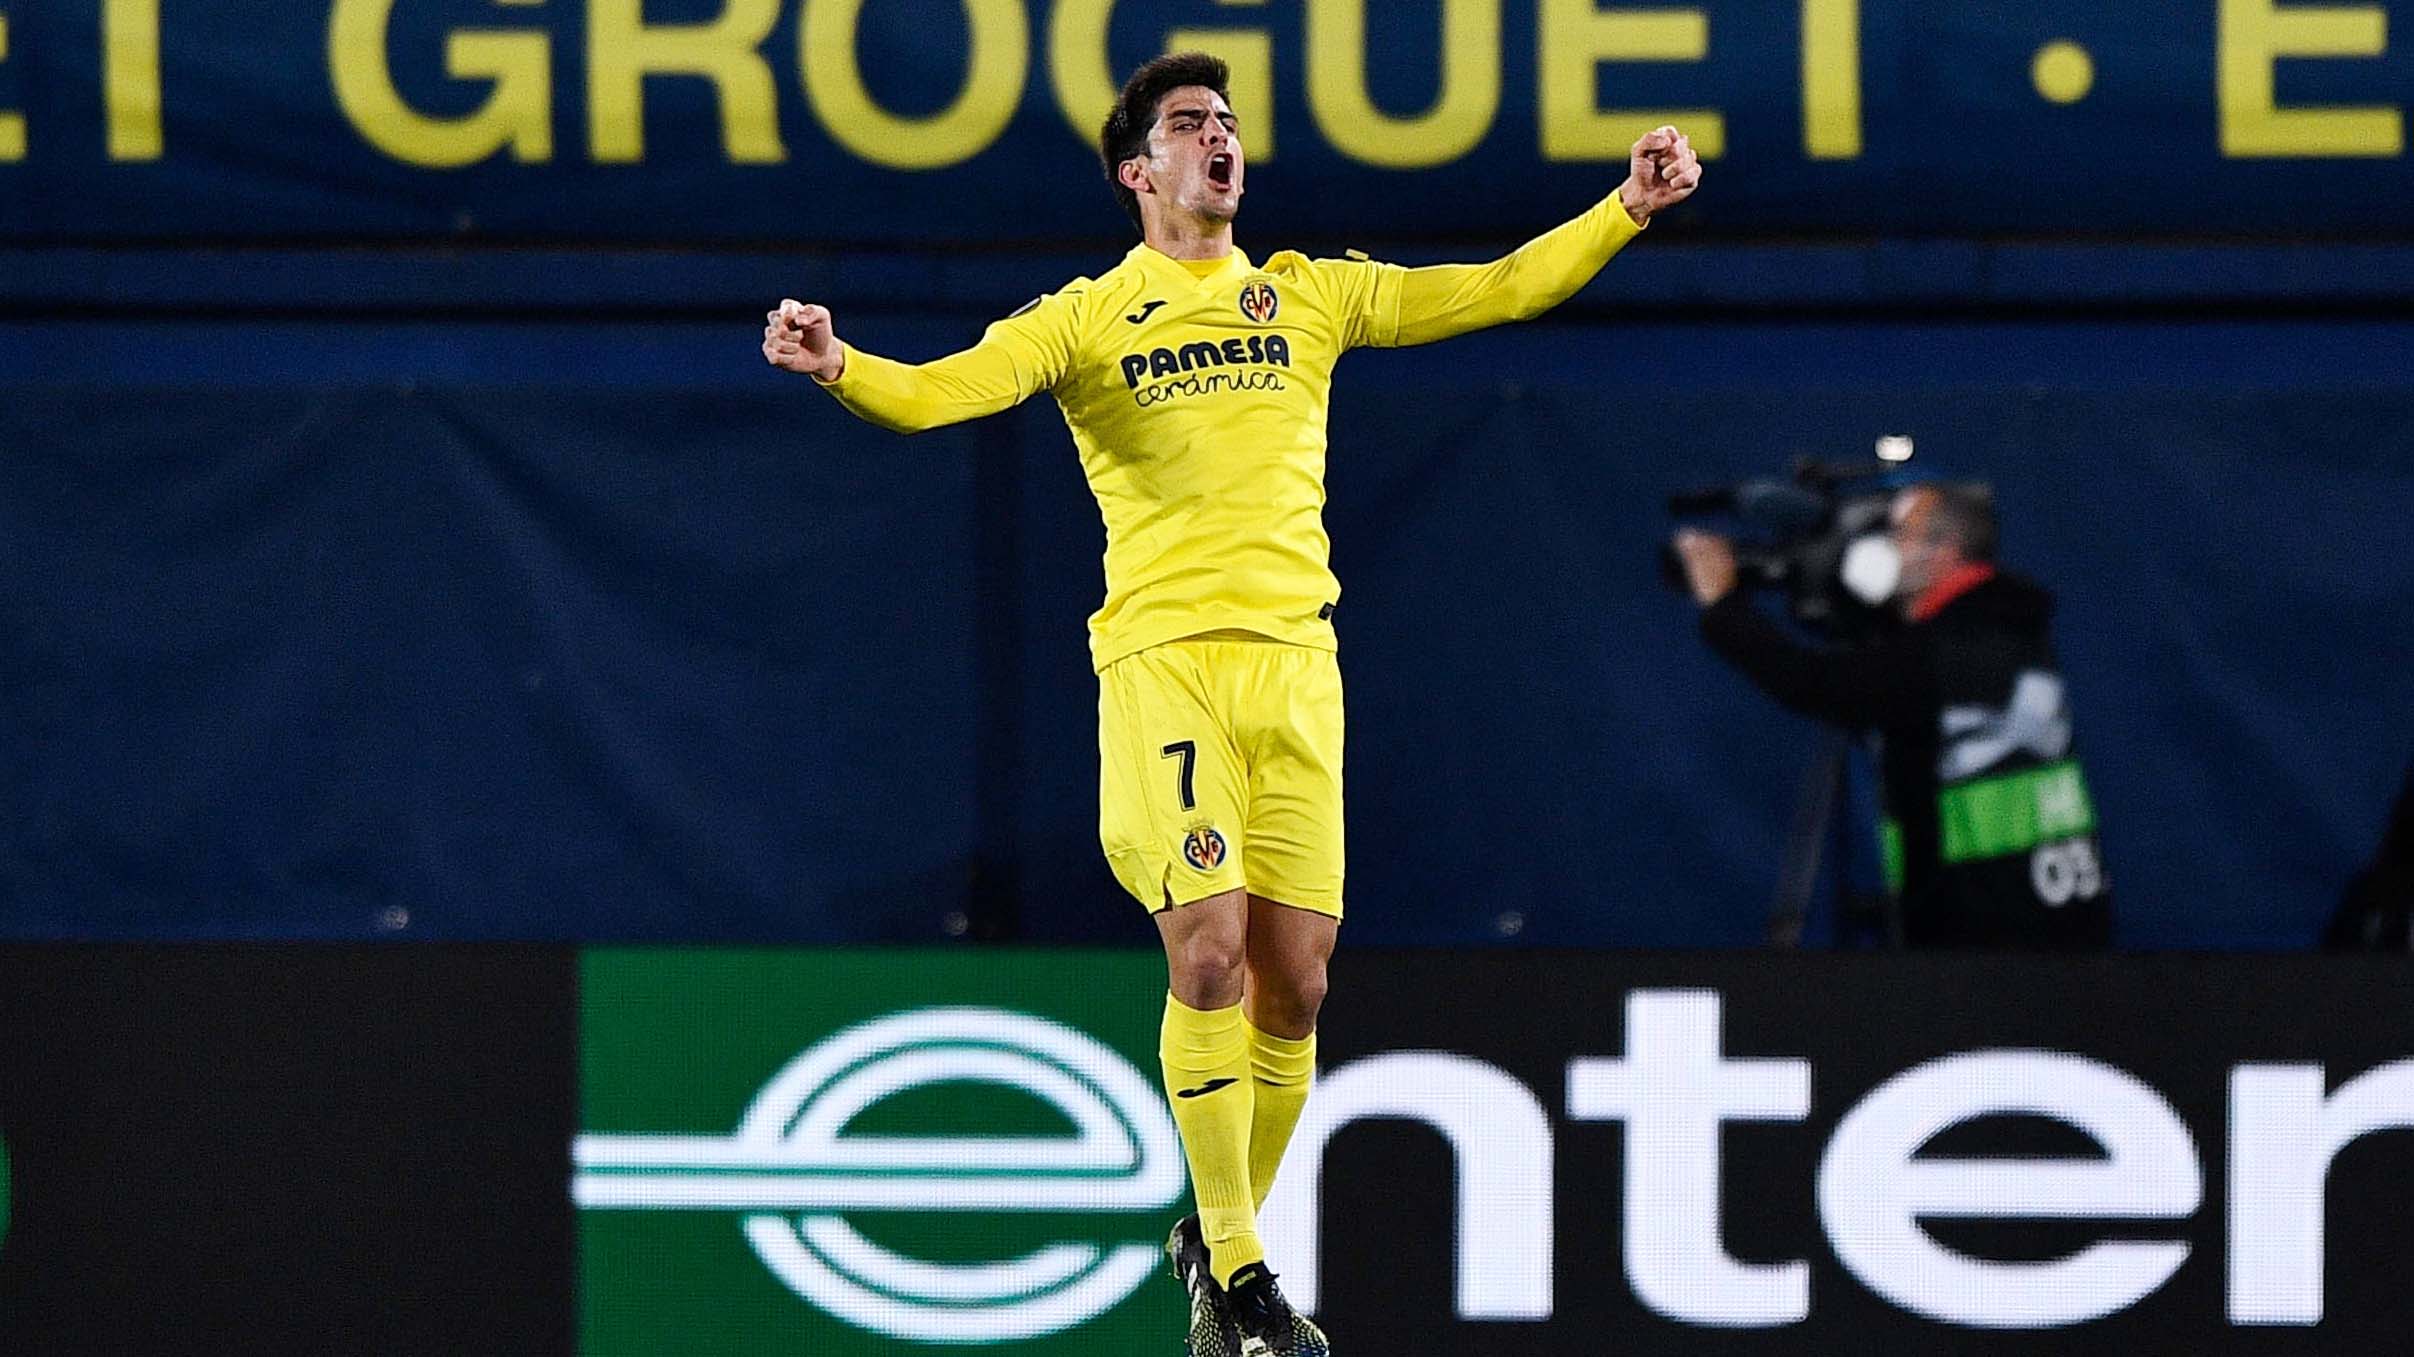 En la vuelta, el ‘Submarino Amarillo’ aprovechó su localía desde el primer tiempo, con gol de Paco Alcácer; Gerard Moreno amplió el marcador y Mislav Orsic descontó por los croatas. Global: 3-1. Villarreal jugará contra Arsenal en semifinales.